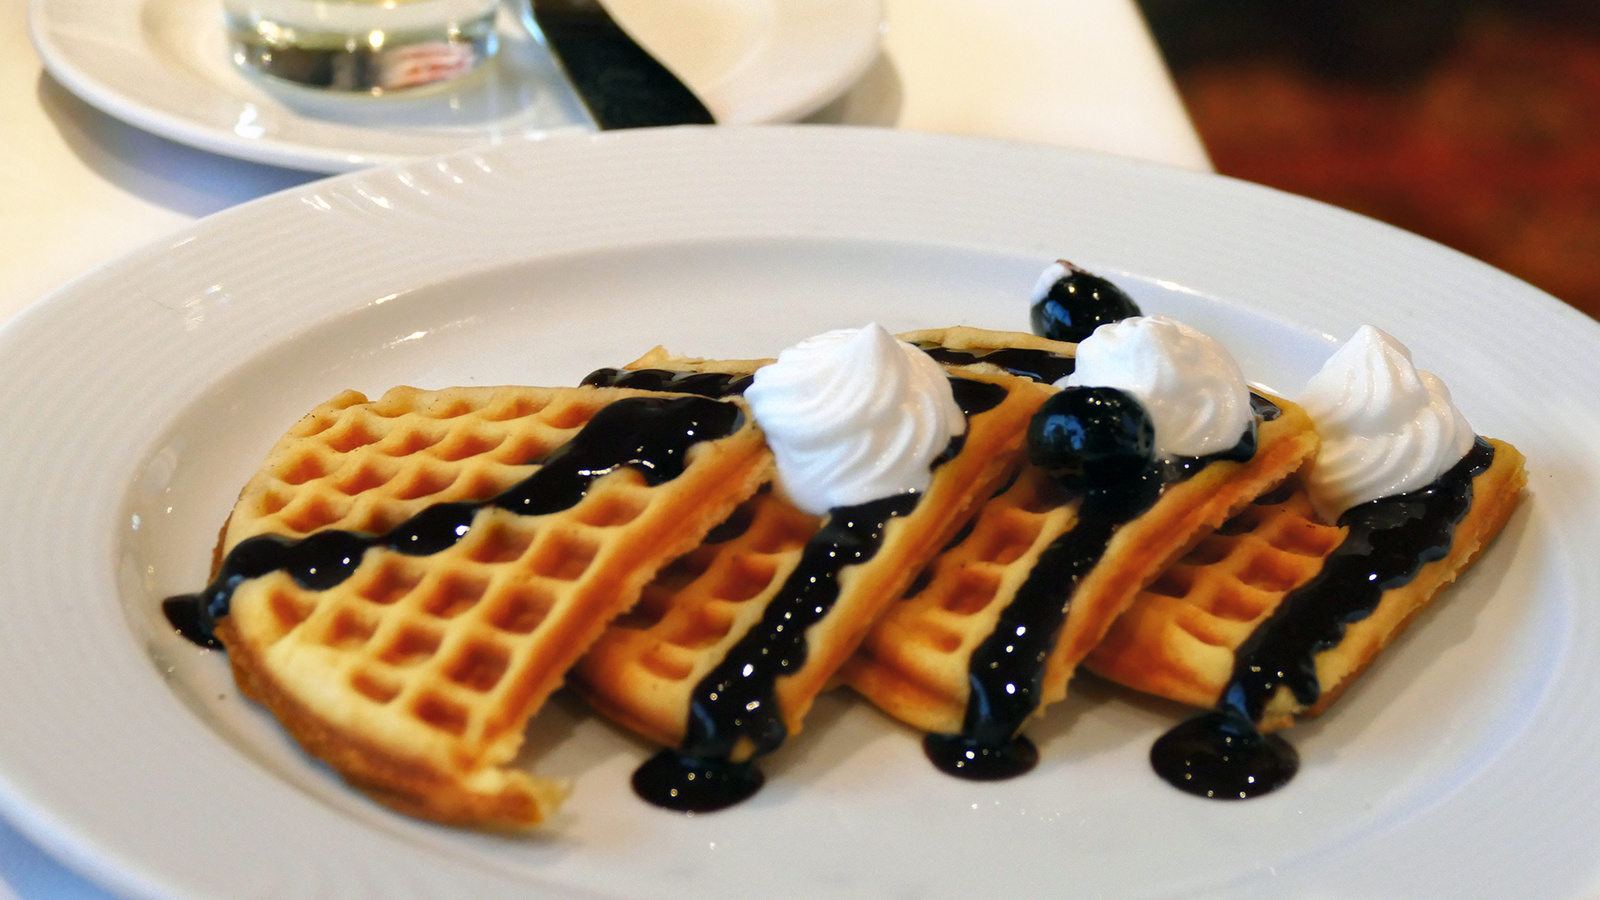 Costa - The Belgian Breakfast - Original waffles